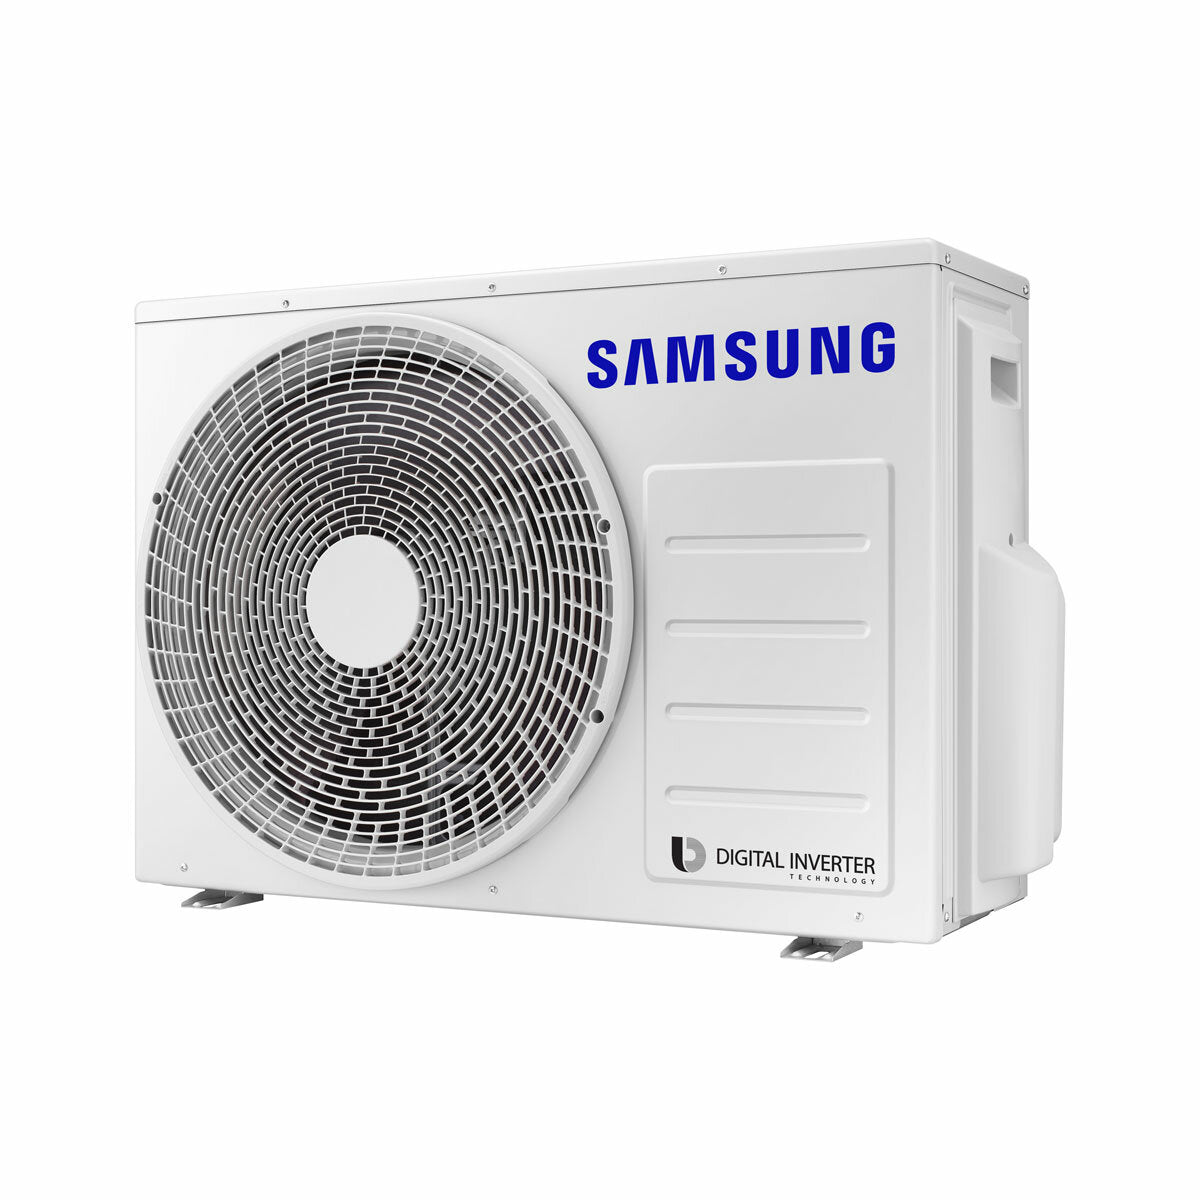 Samsung windfree Avant Klimaanlage Trial Split 9000 + 9000 + 9000 BTU Inverter A++ WLAN Außengerät 5,2 kW